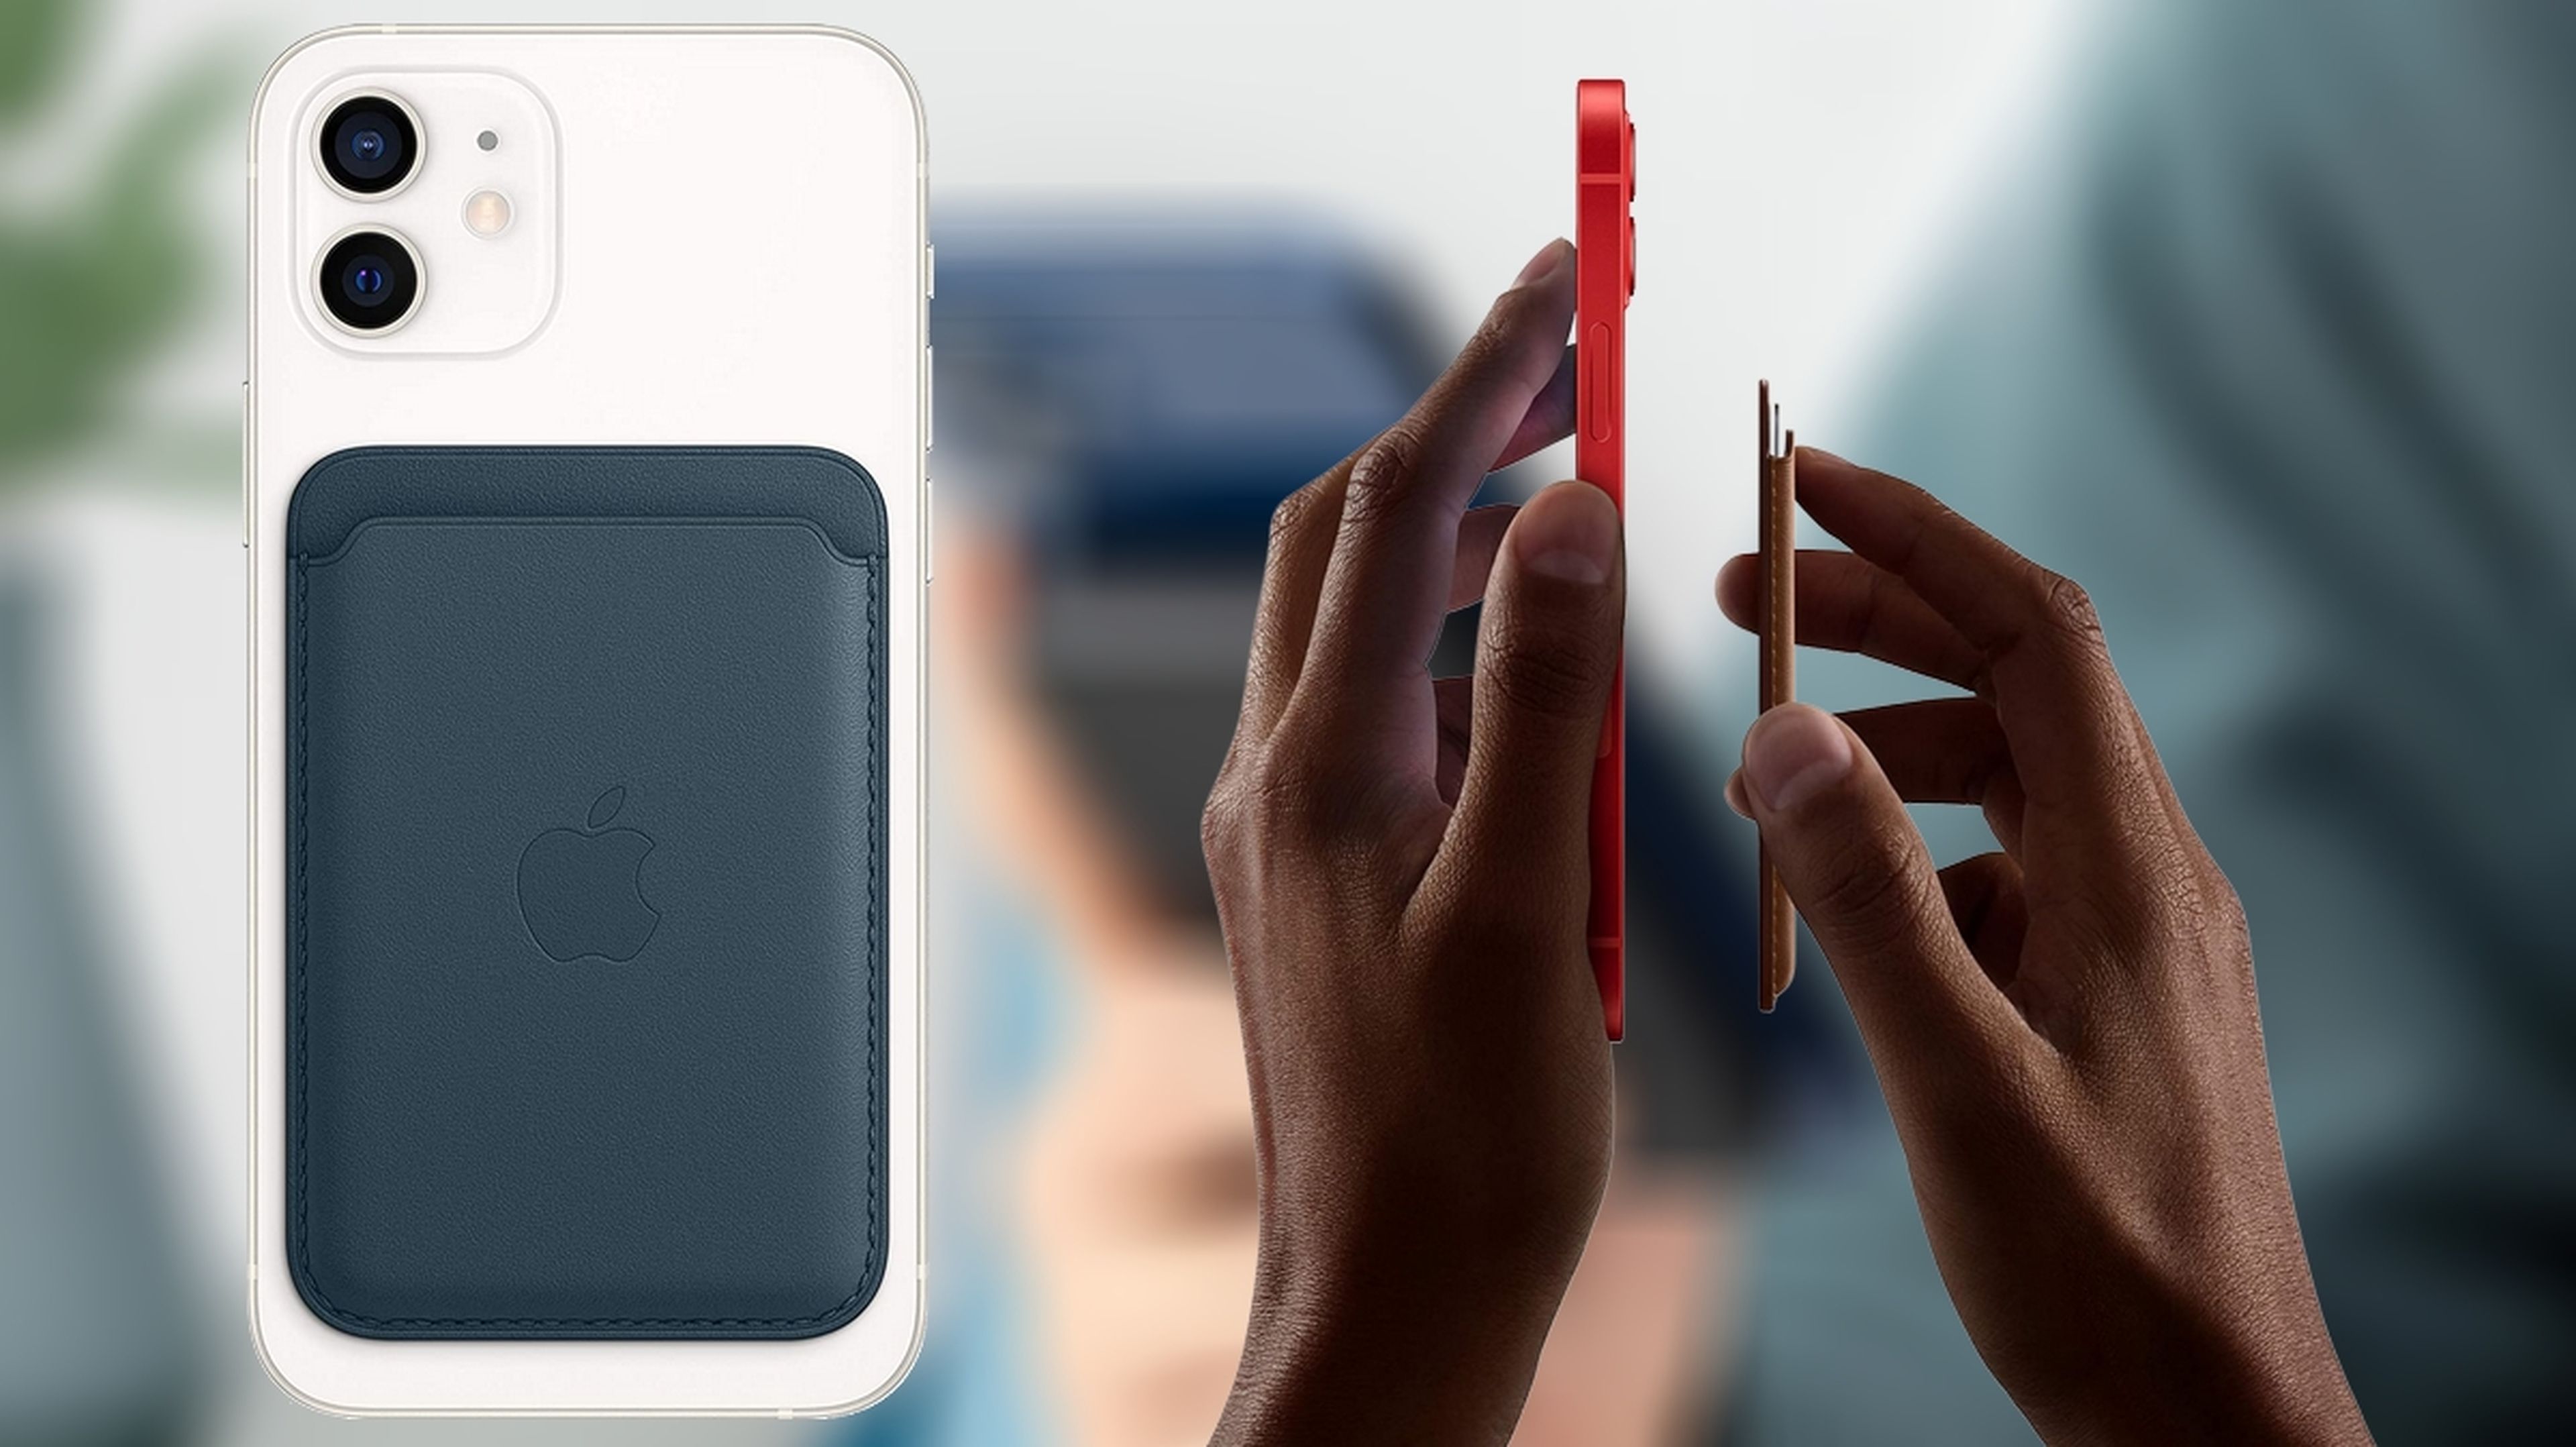 La cartera de piel con MagSafe de Apple tiene un 50% de descuento  ¡aprovecha!